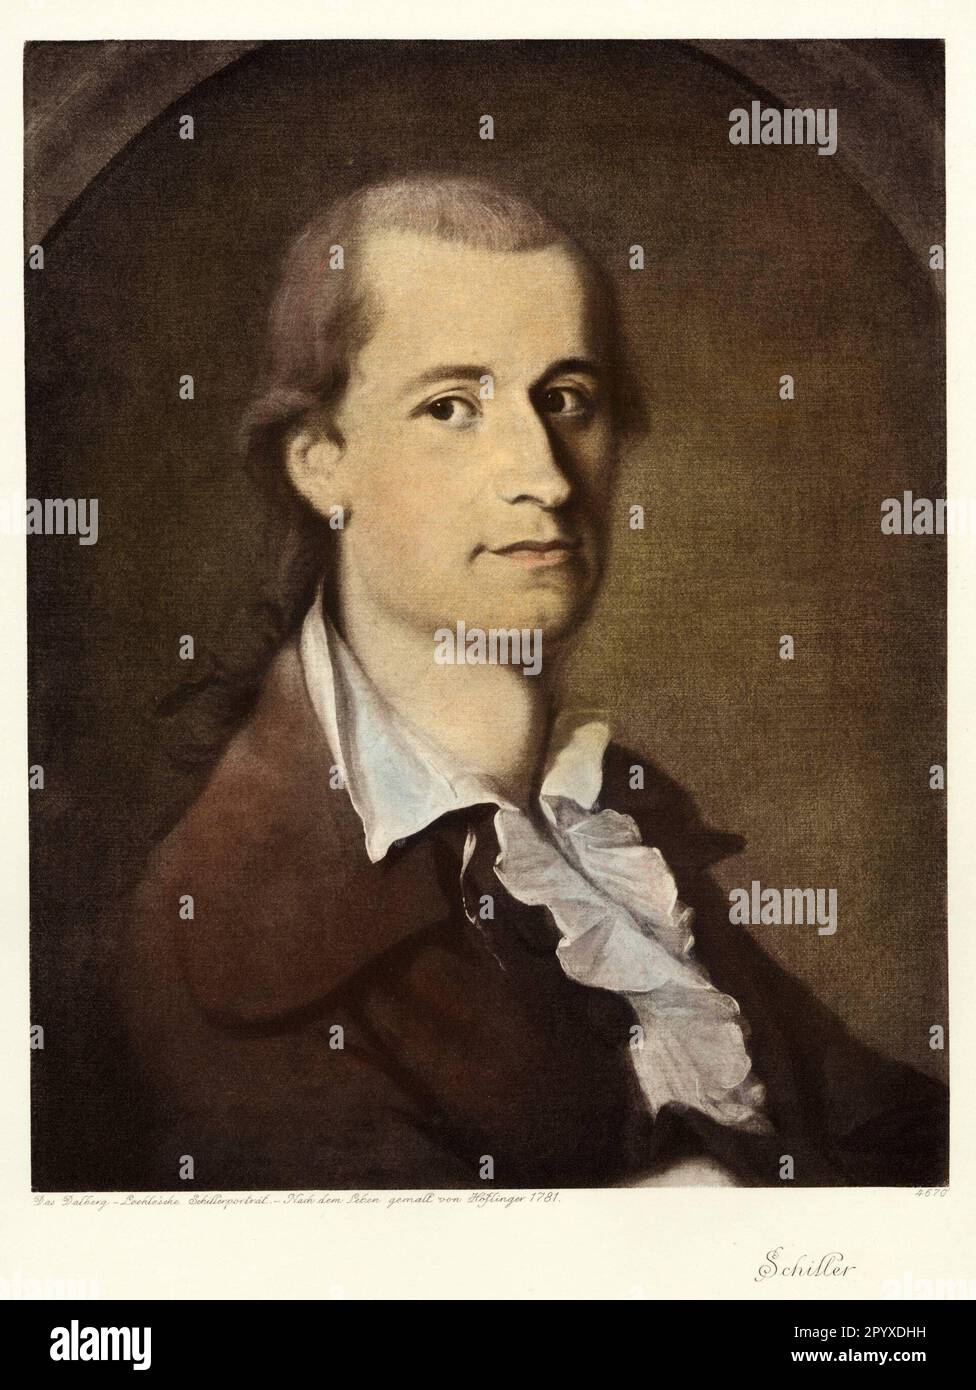 Friedrich von Schiller (1759-1805), poète allemand, peinture de Höflinger à partir de 1781. Photo: Heliogravure, Corpus Imaginum, Collection Hanfstaengl. [traduction automatique] Banque D'Images